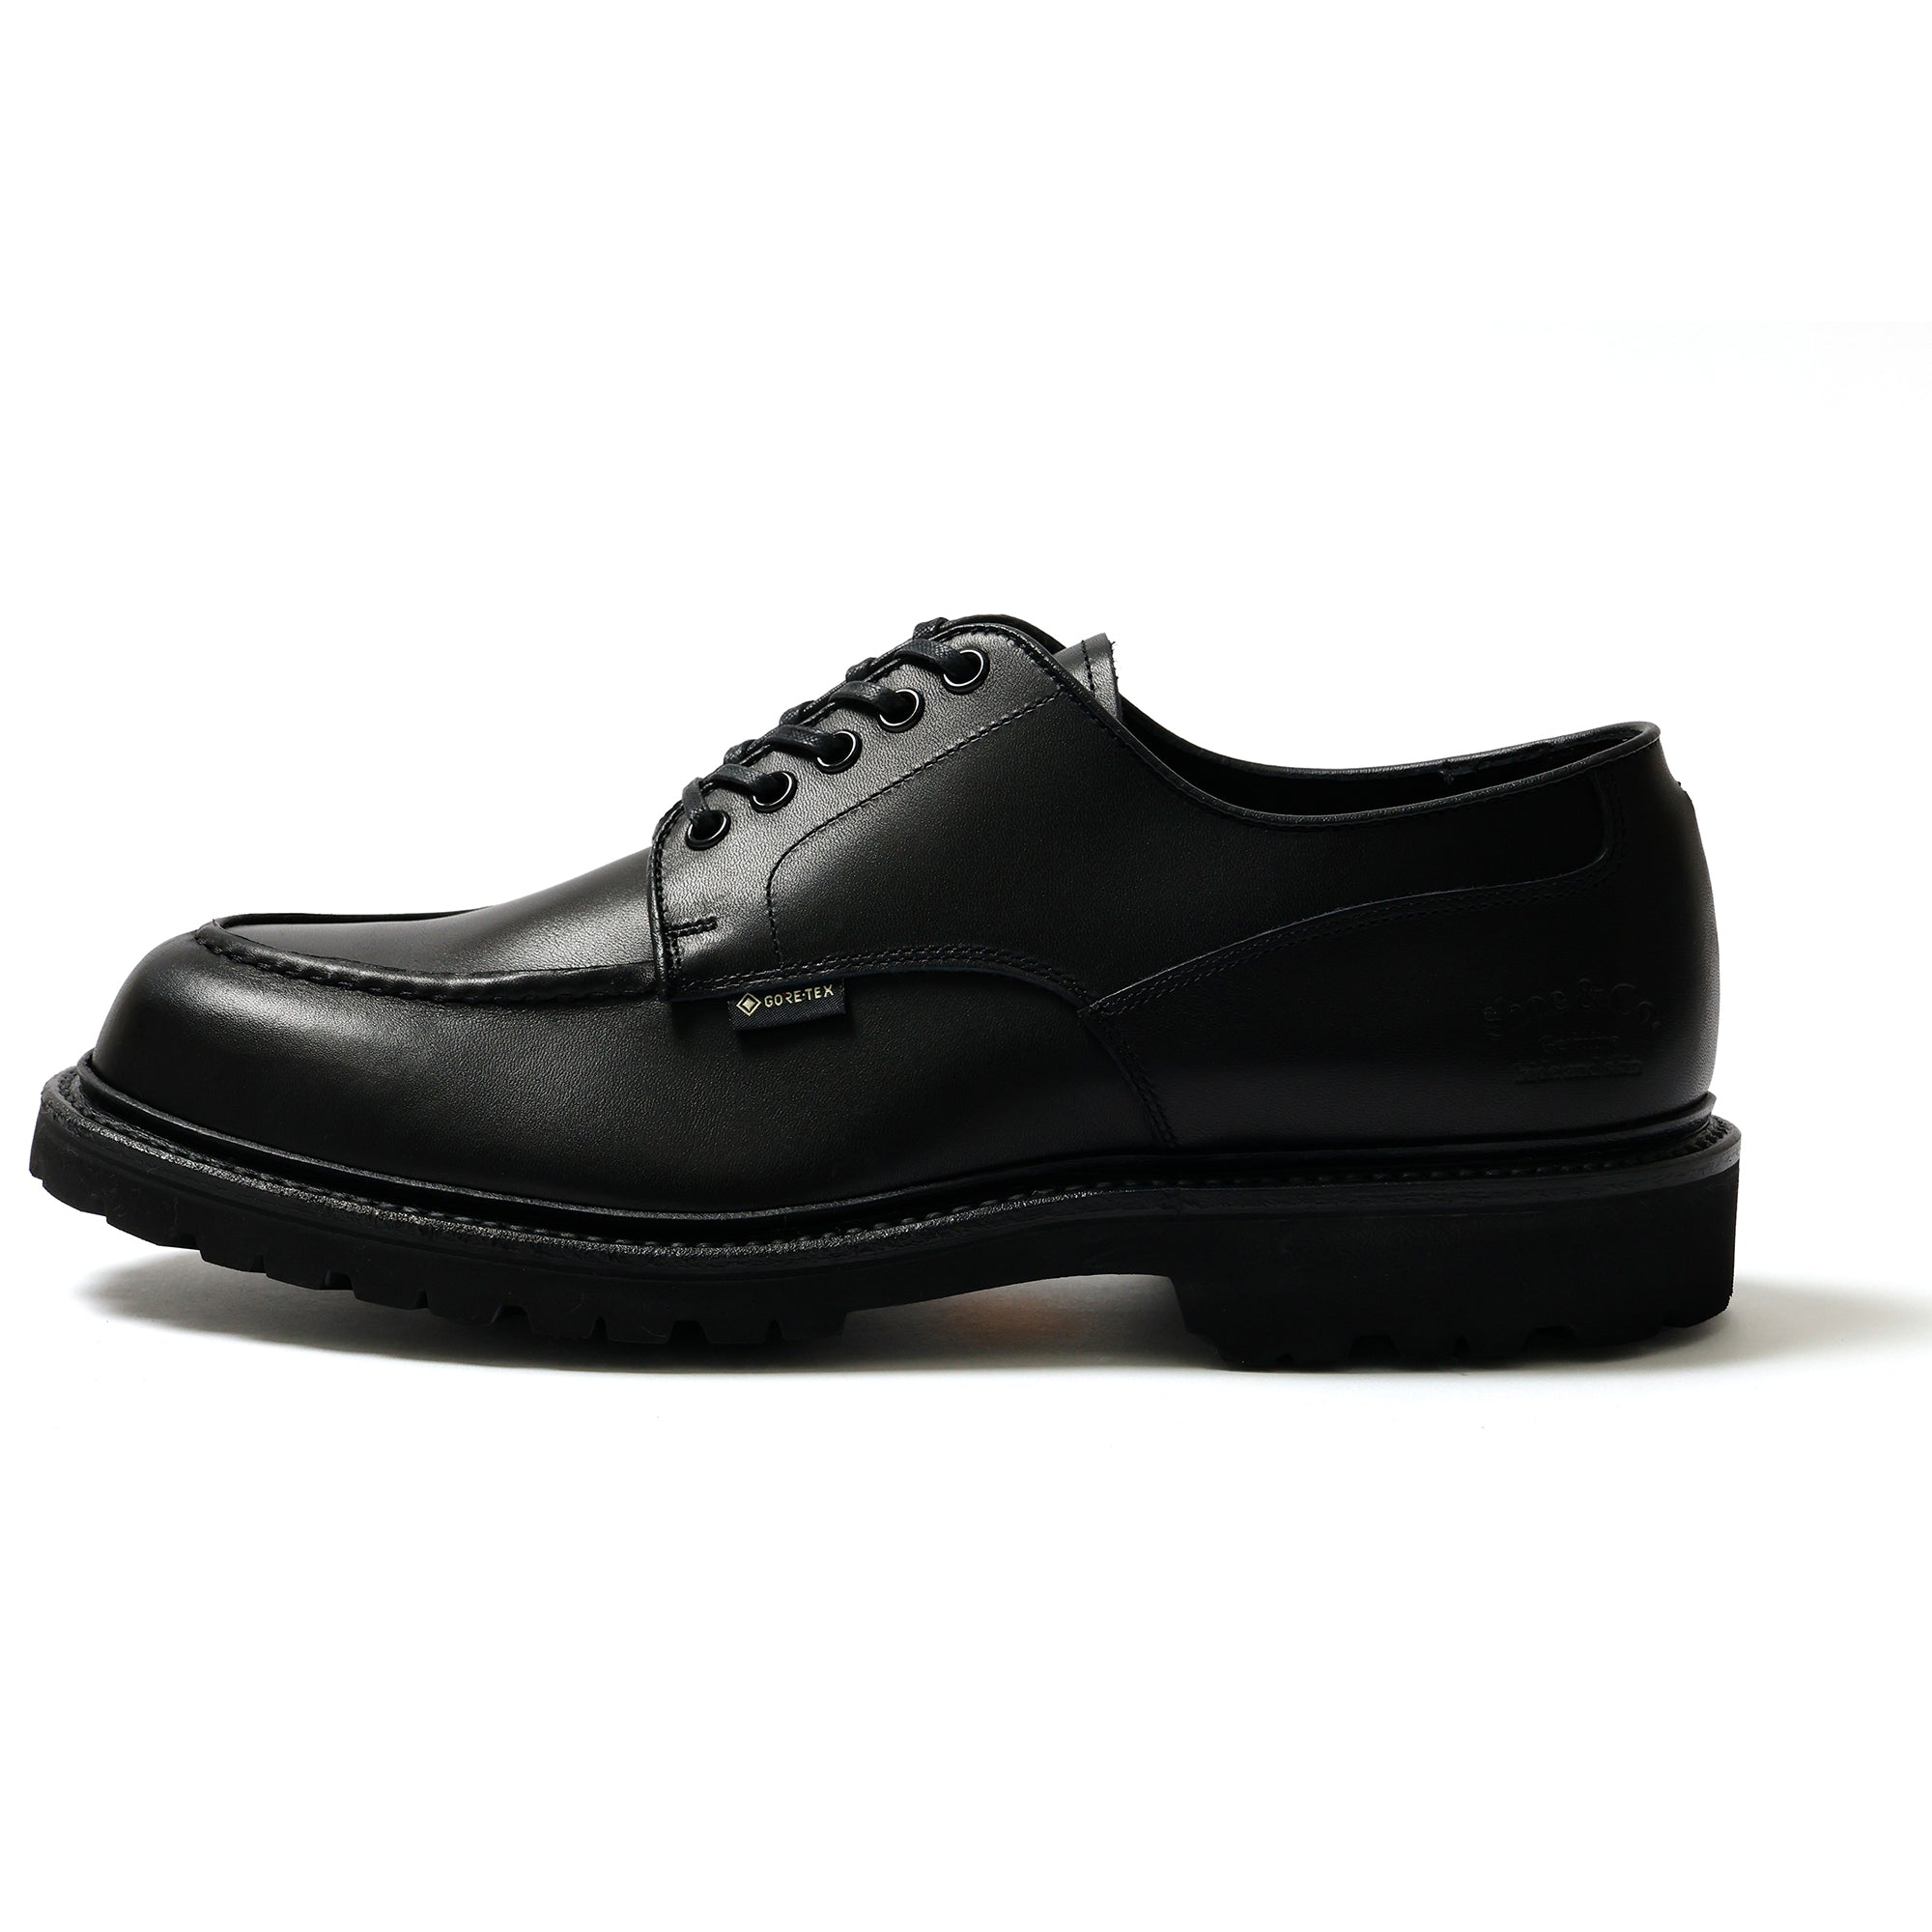 U-Tip GTX _Black – REGAL Shoe & Co.